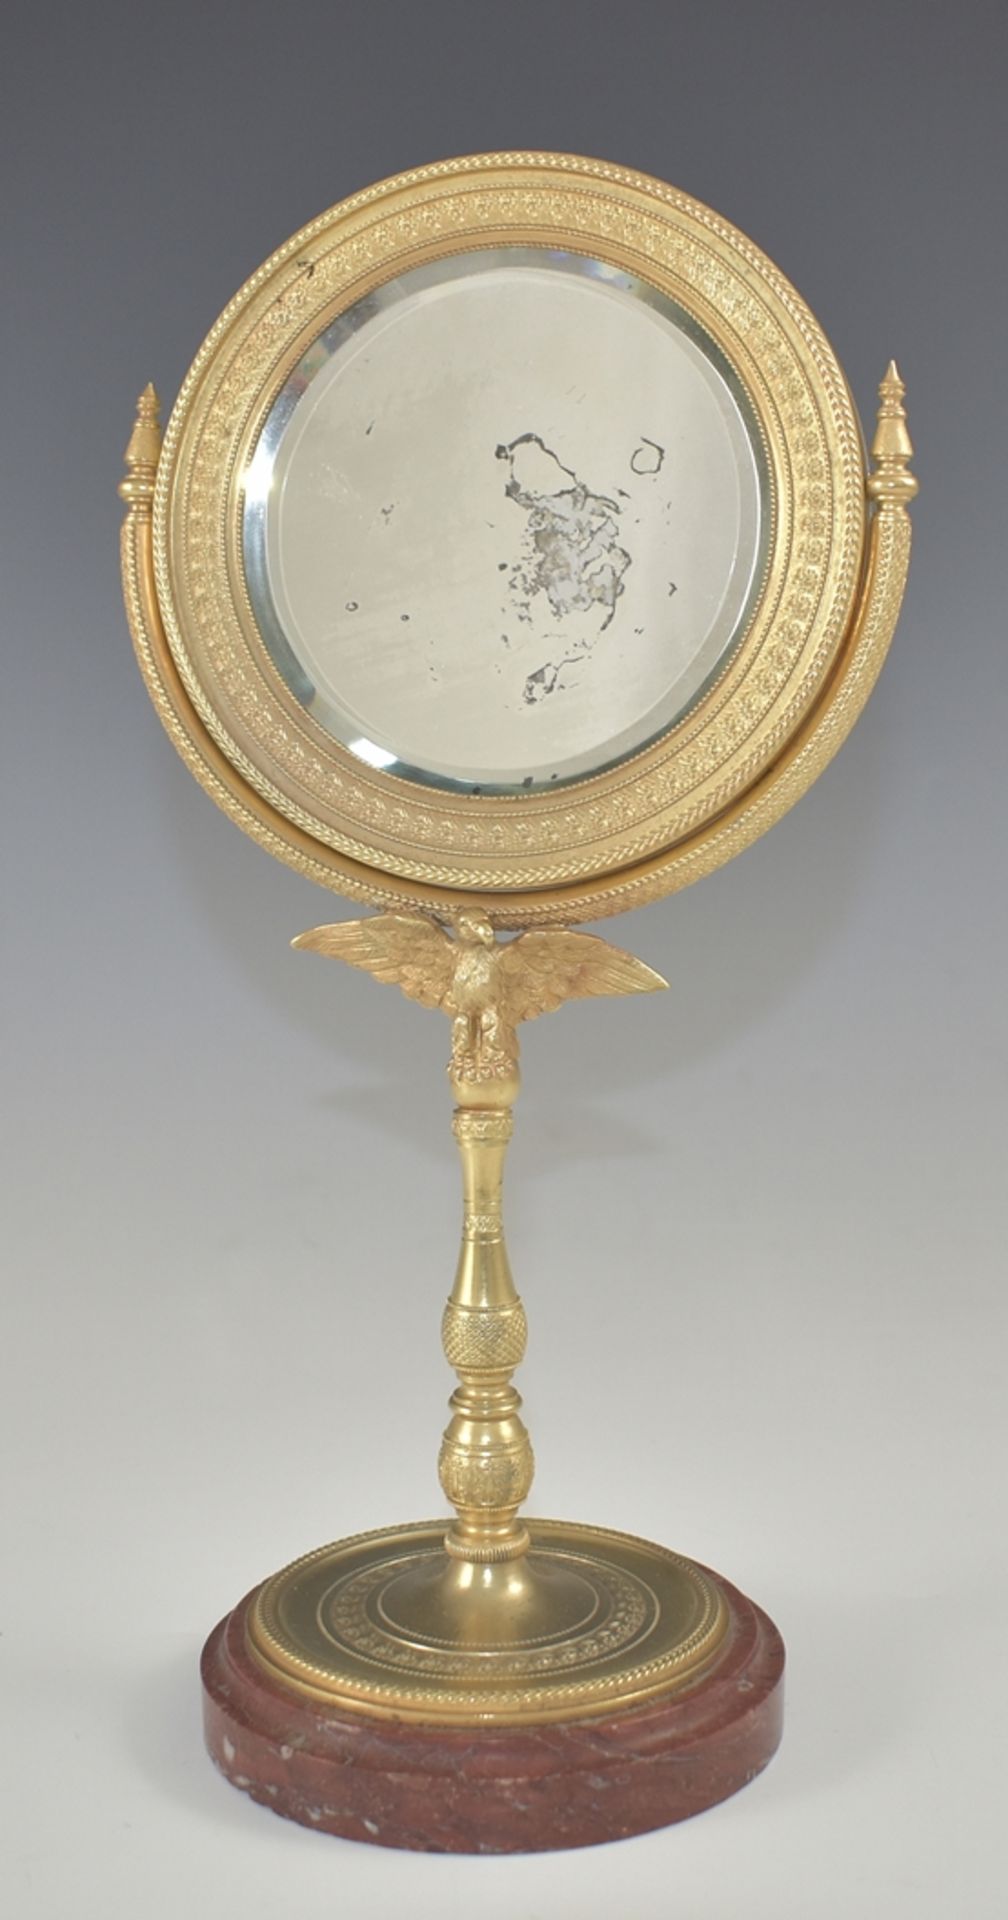 Empire-Standspiegel. Säulenschäftung mit Adlerhalterung und rundem Spiegel. Feiner Reliefdekor mit 